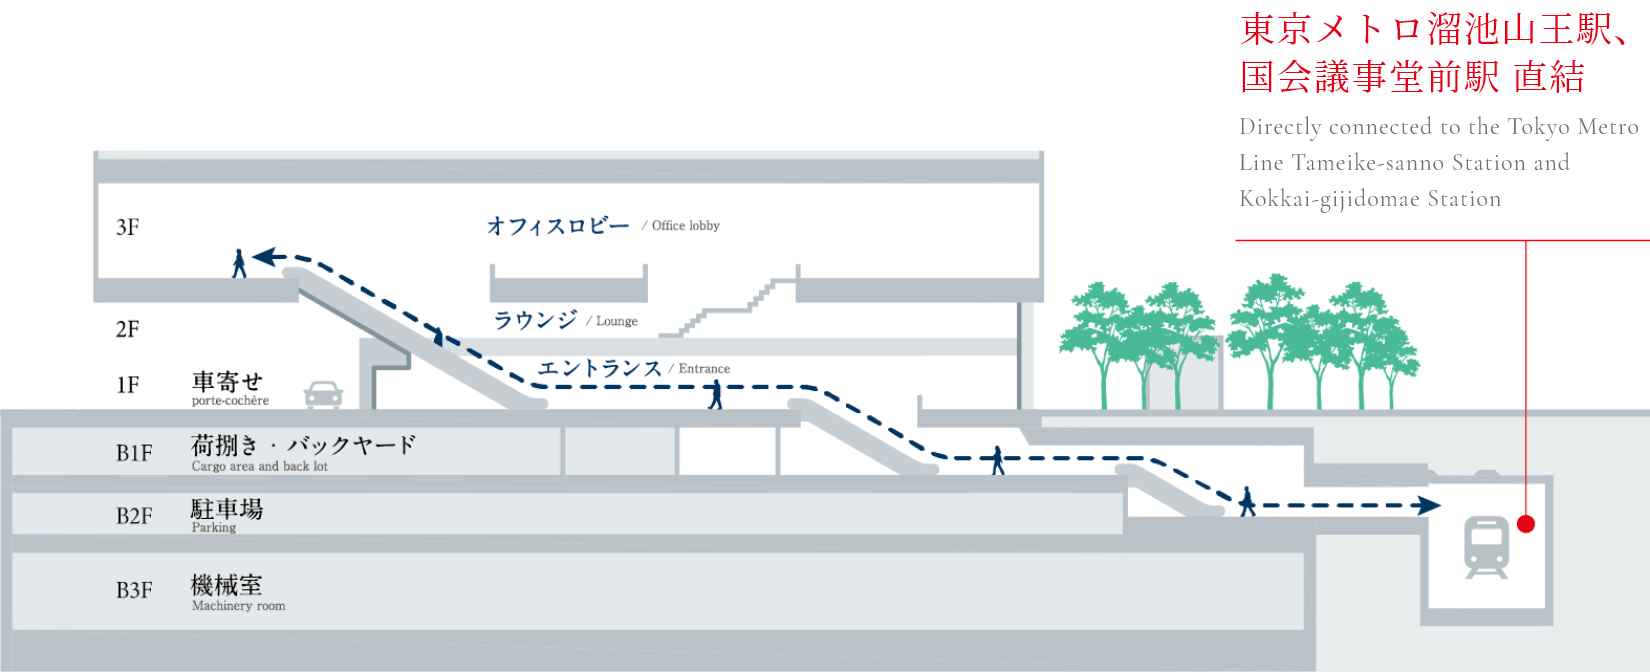 東京メトロ銀座線・南北線など多数の路線にダイレクトアクセス